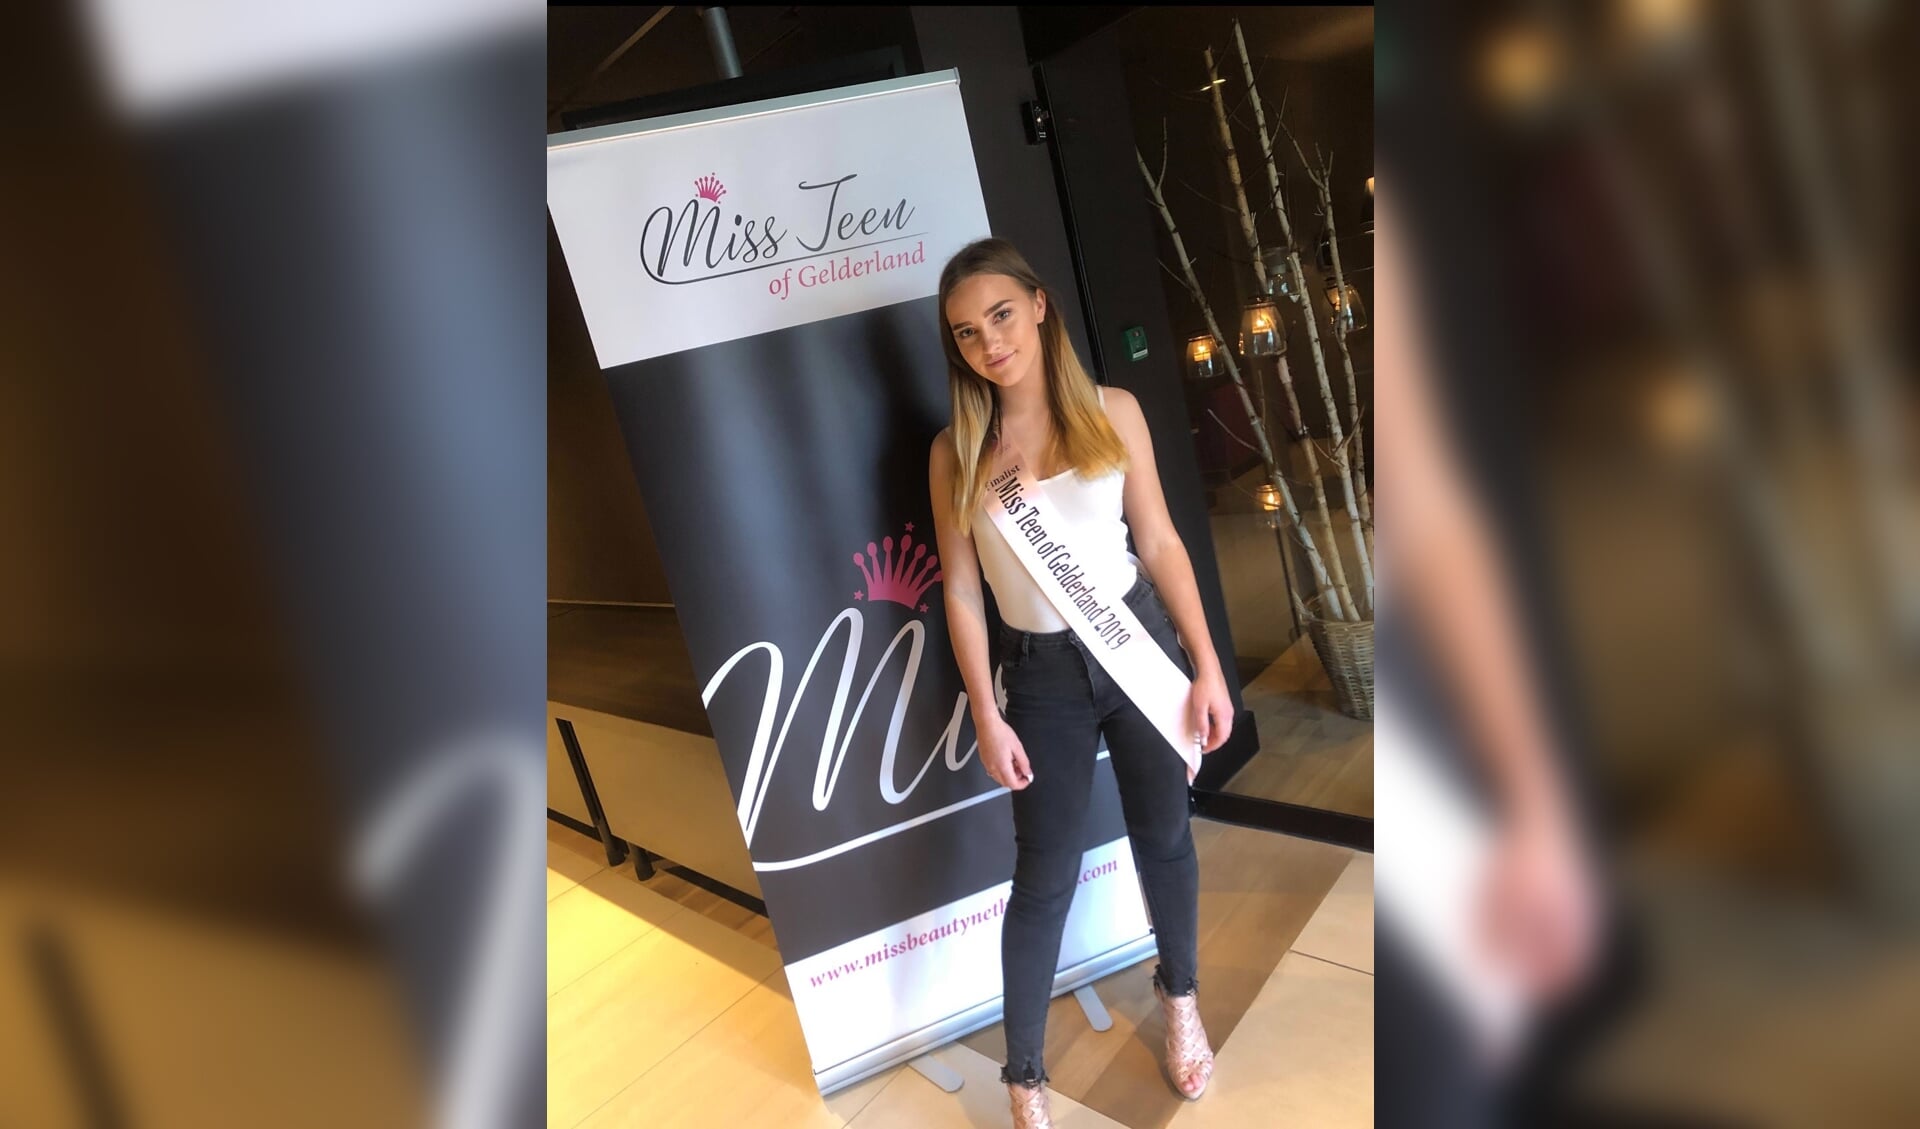 Annique Roes is finaliste Miss Teen of Gelderland 2019. Foto: Sefo Joost de Bruijn